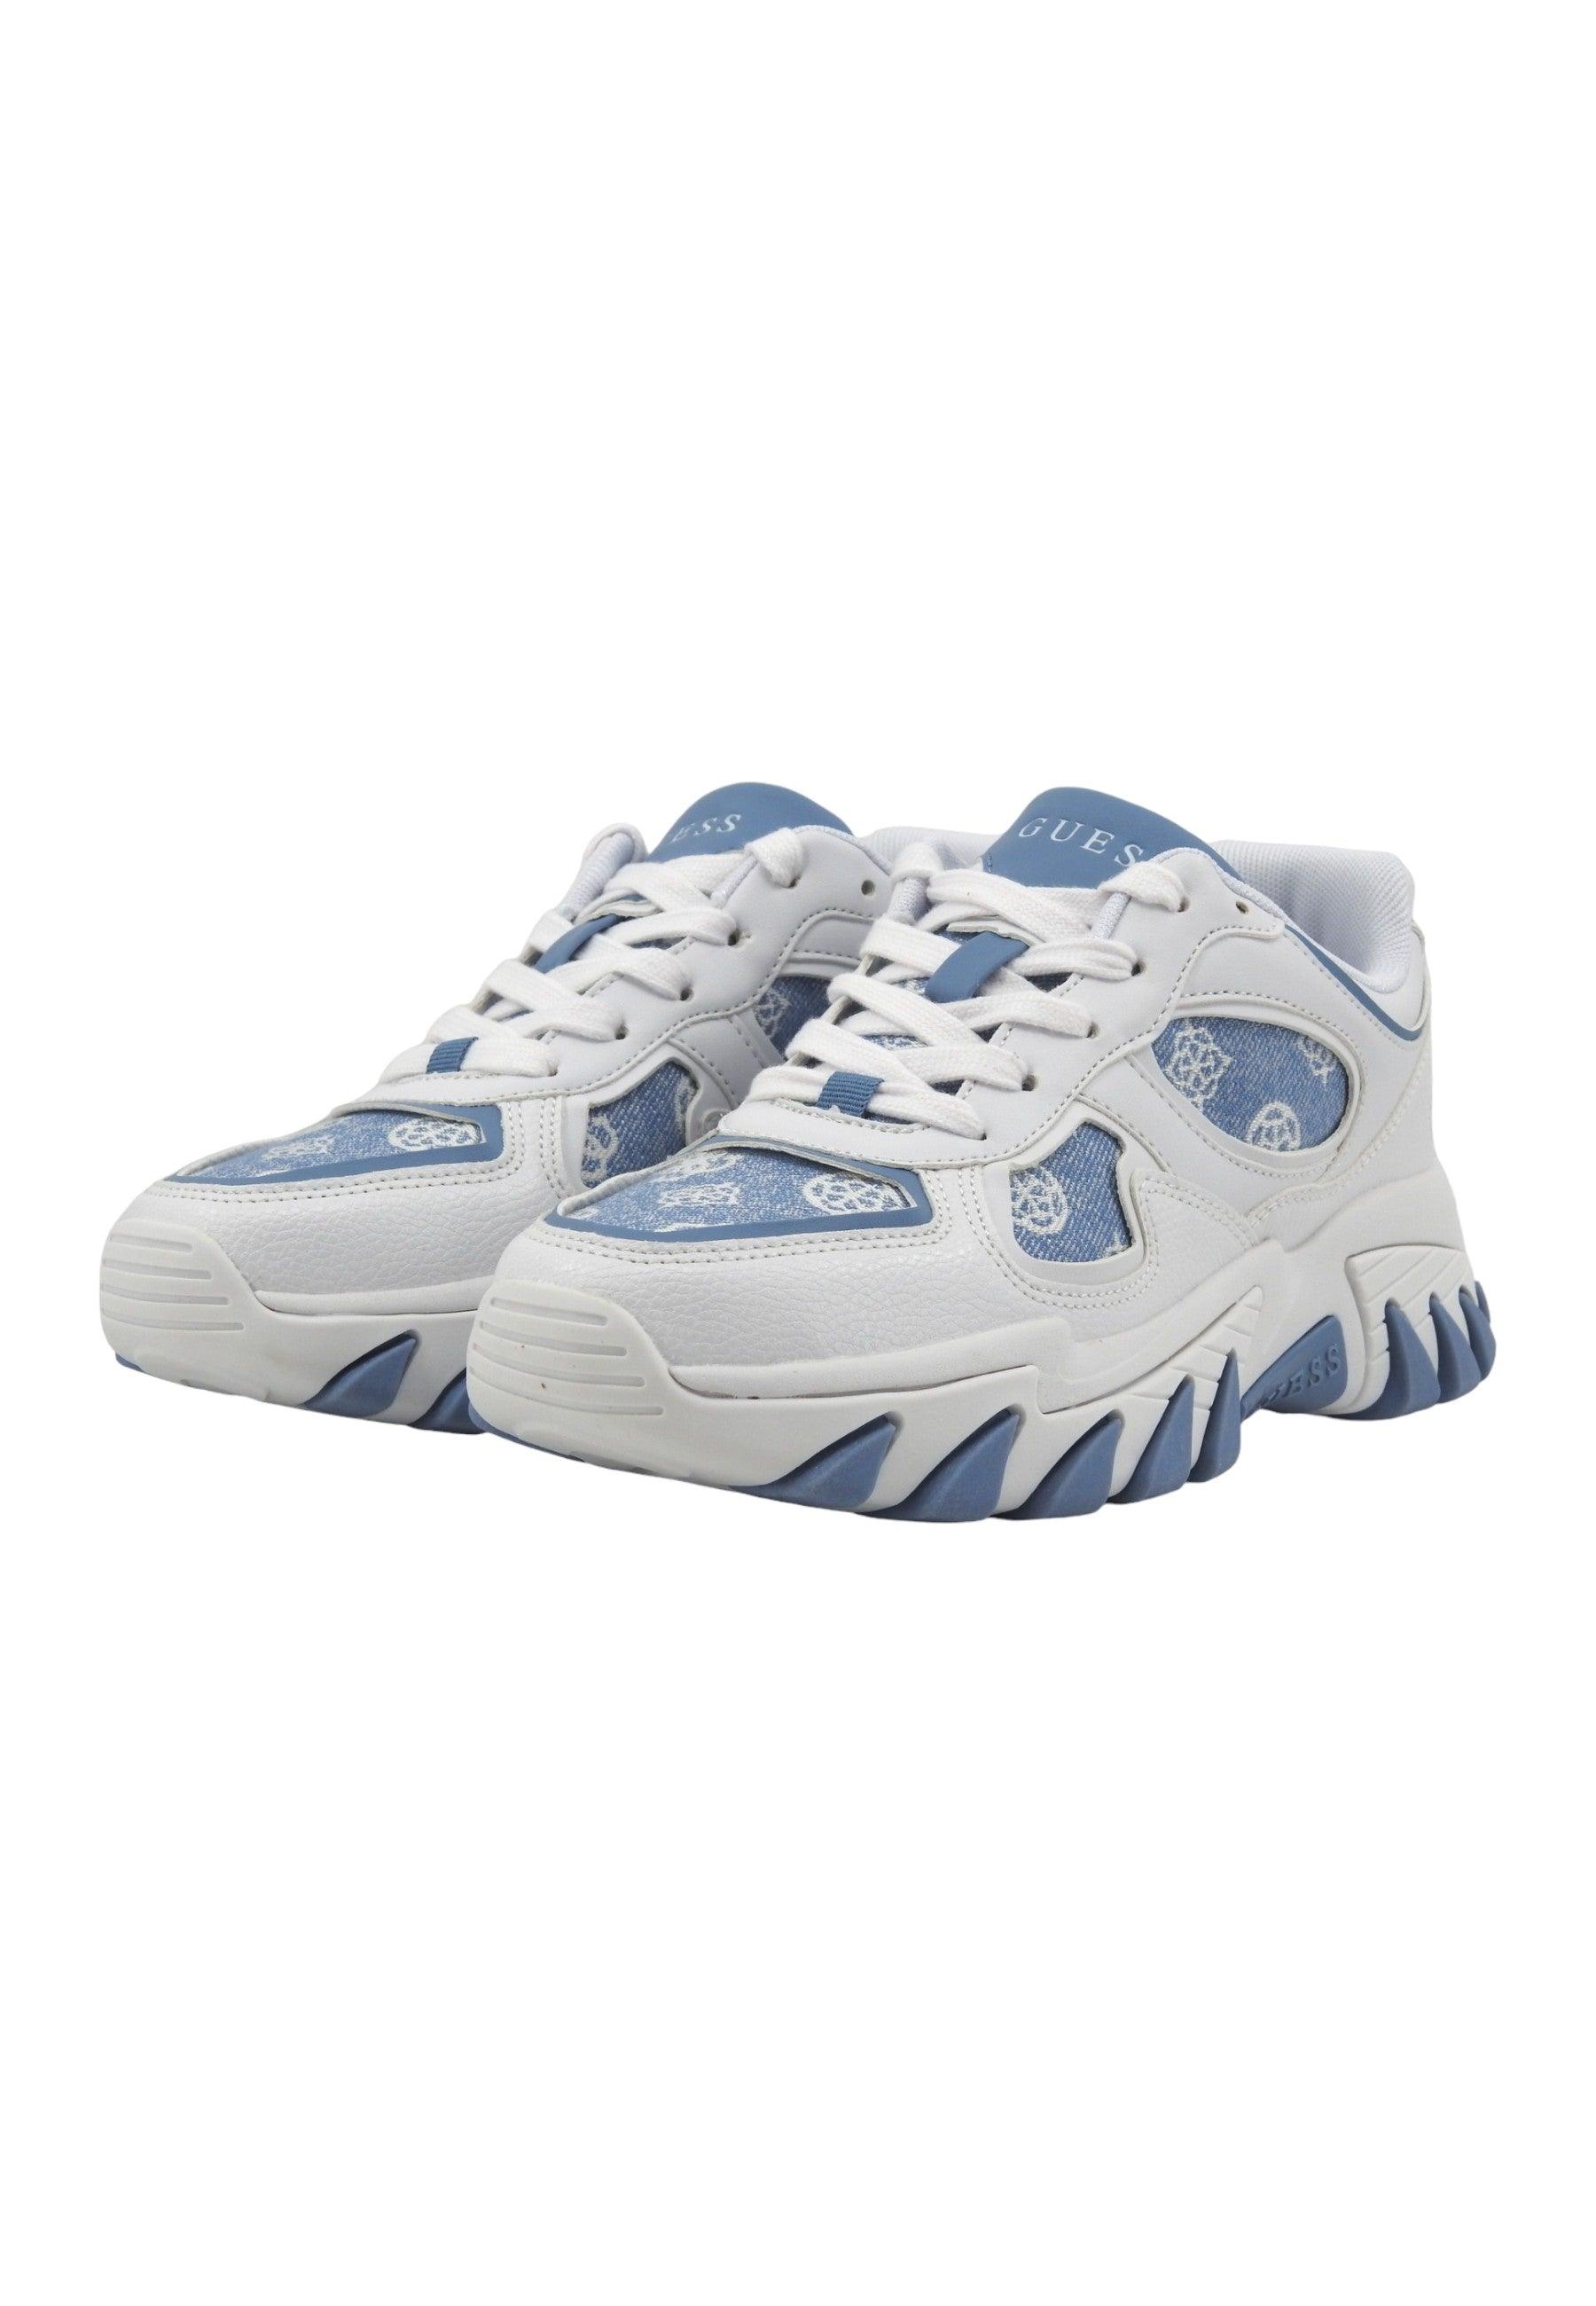 GUESS Sneaker Donna Denim Blue Bianco FLJNORFAL12 - Sandrini Calzature e Abbigliamento